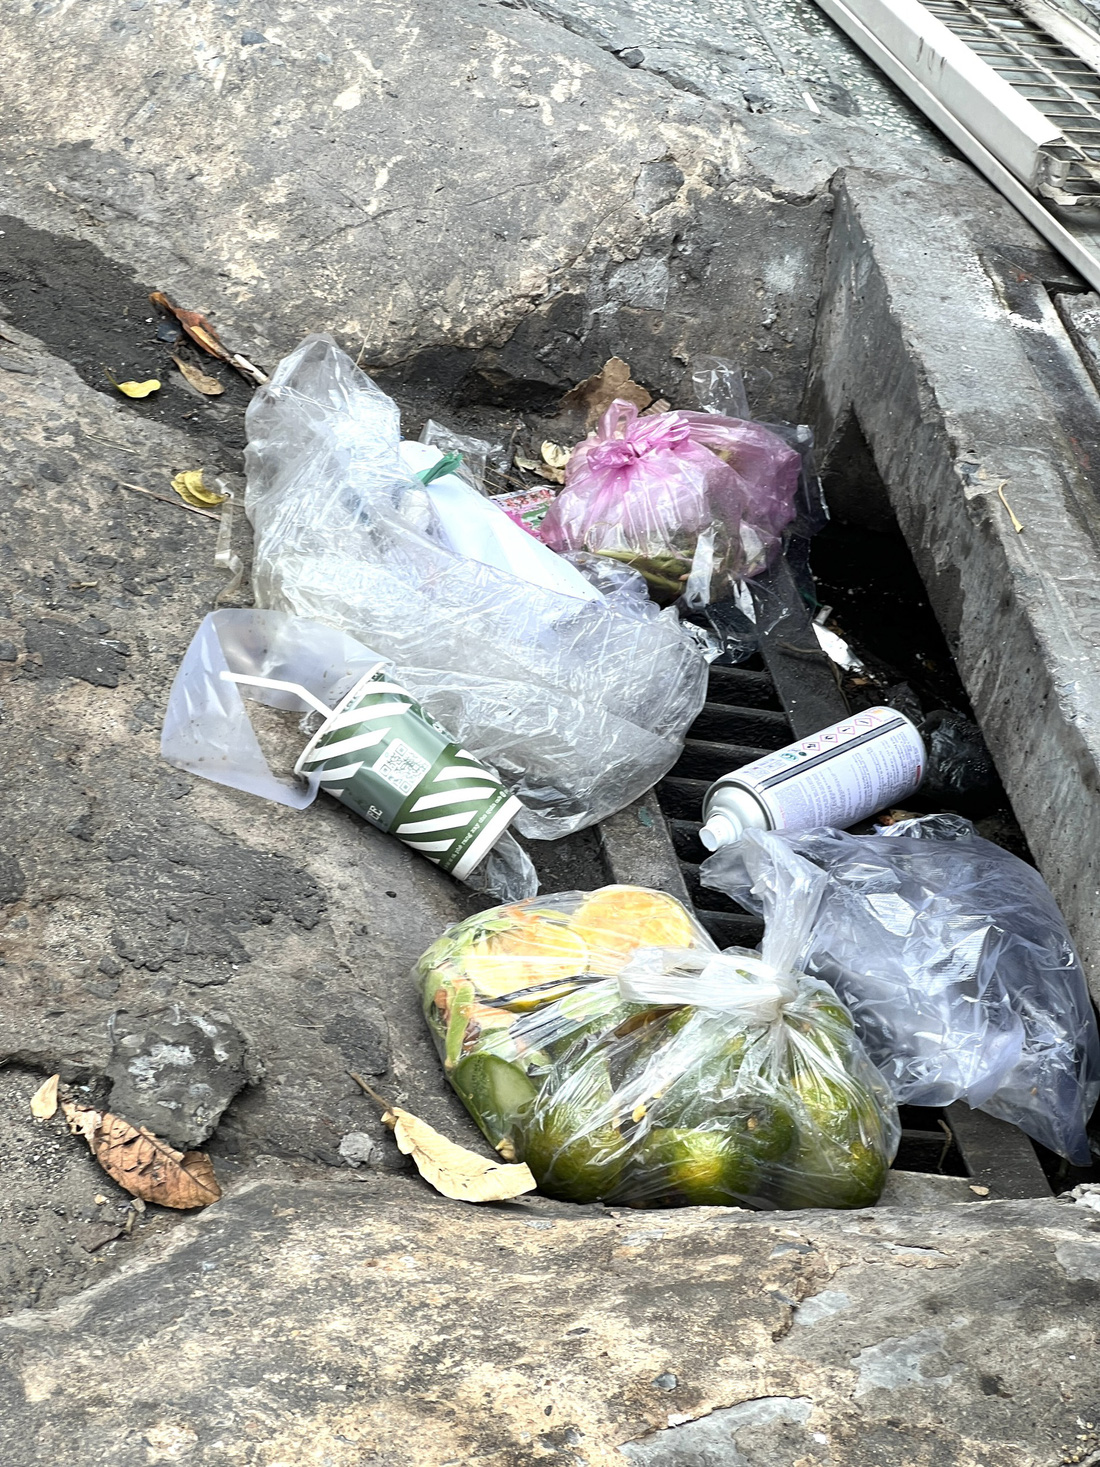 Tất cả rác đều được dồn xuống miệng cống trên đường Phan Văn Trị, quận Gò Vấp - Ảnh: XUÂN ĐOÀN